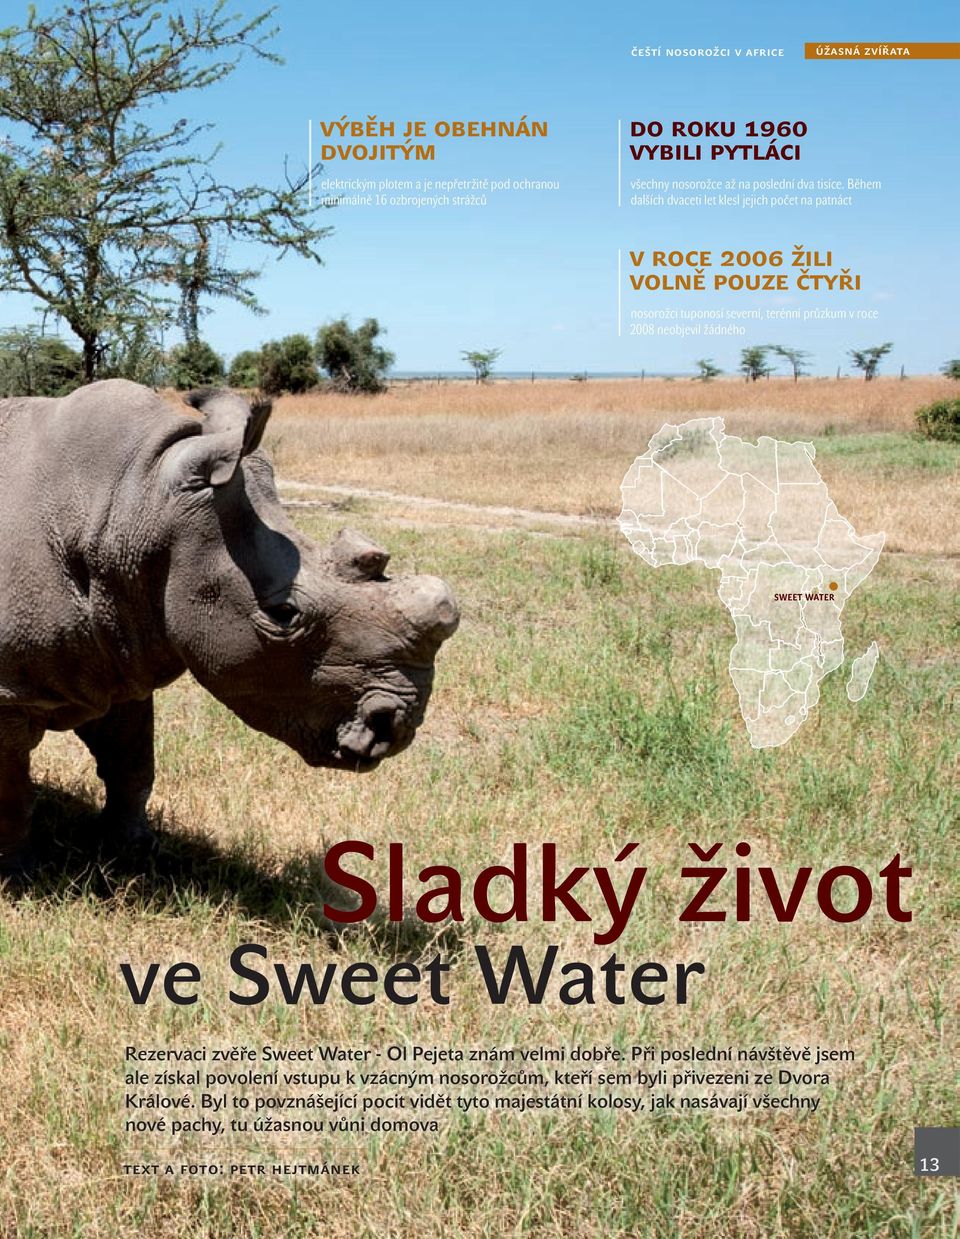 Během dalších dvaceti let klesl jejich počet na patnáct v roce 2006 žili volně pouze čtyři nosorožci tuponosí severní, terénní průzkum v roce 2008 neobjevil žádného sweet water Sladký